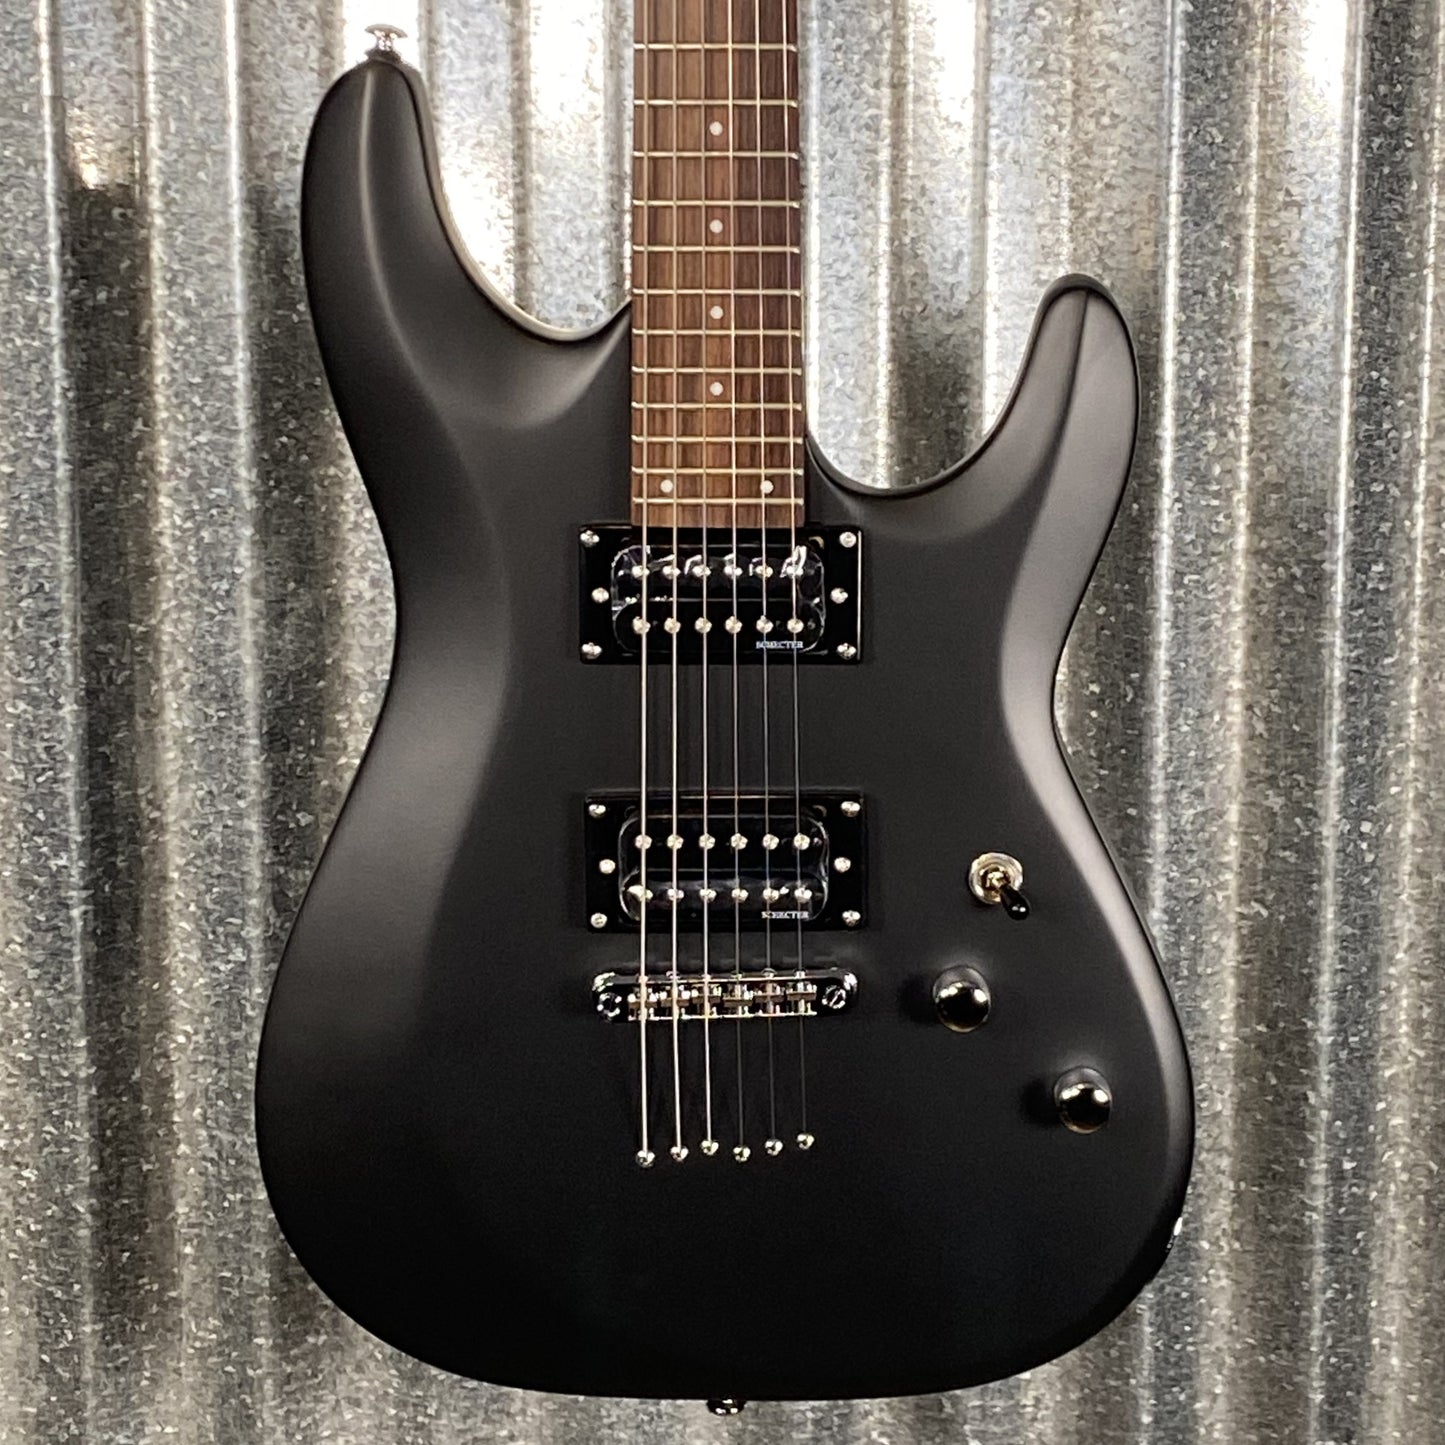 Schecter C-6 Deluxe Satin Black Guitar #0070